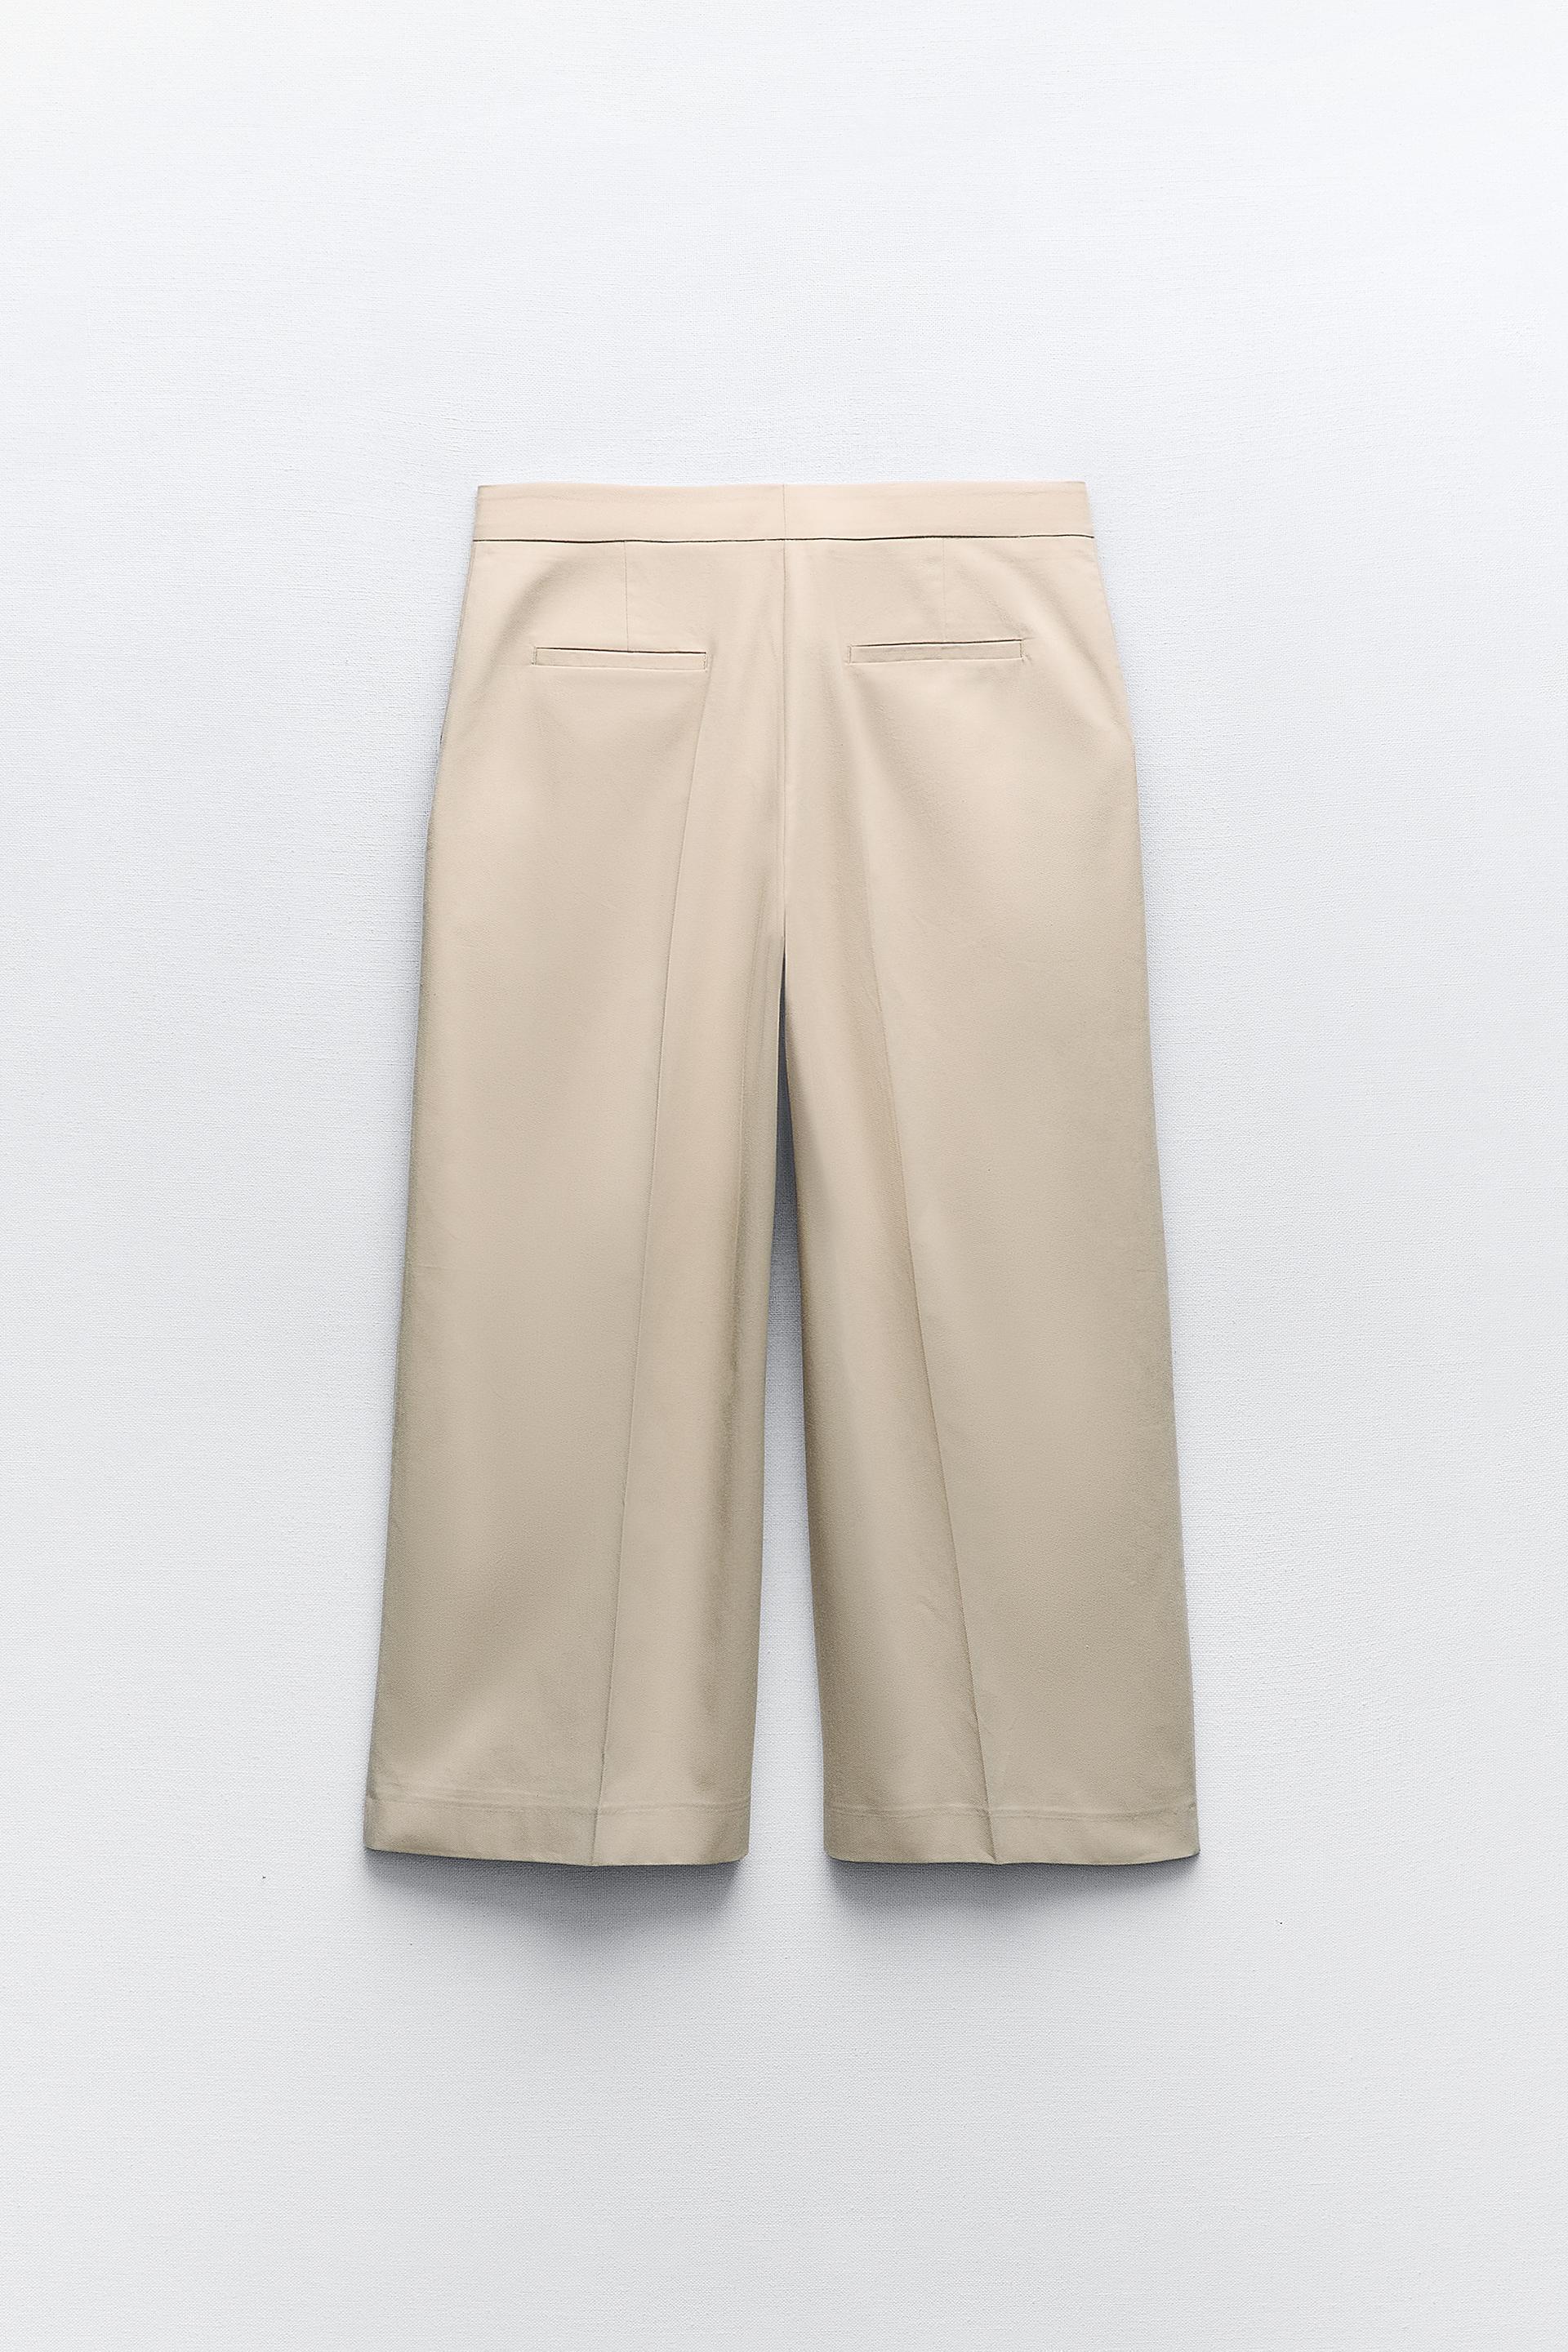 Zara Pants Women's Medium Beige 50% Linen With Pockets Wide Leg Lightweight